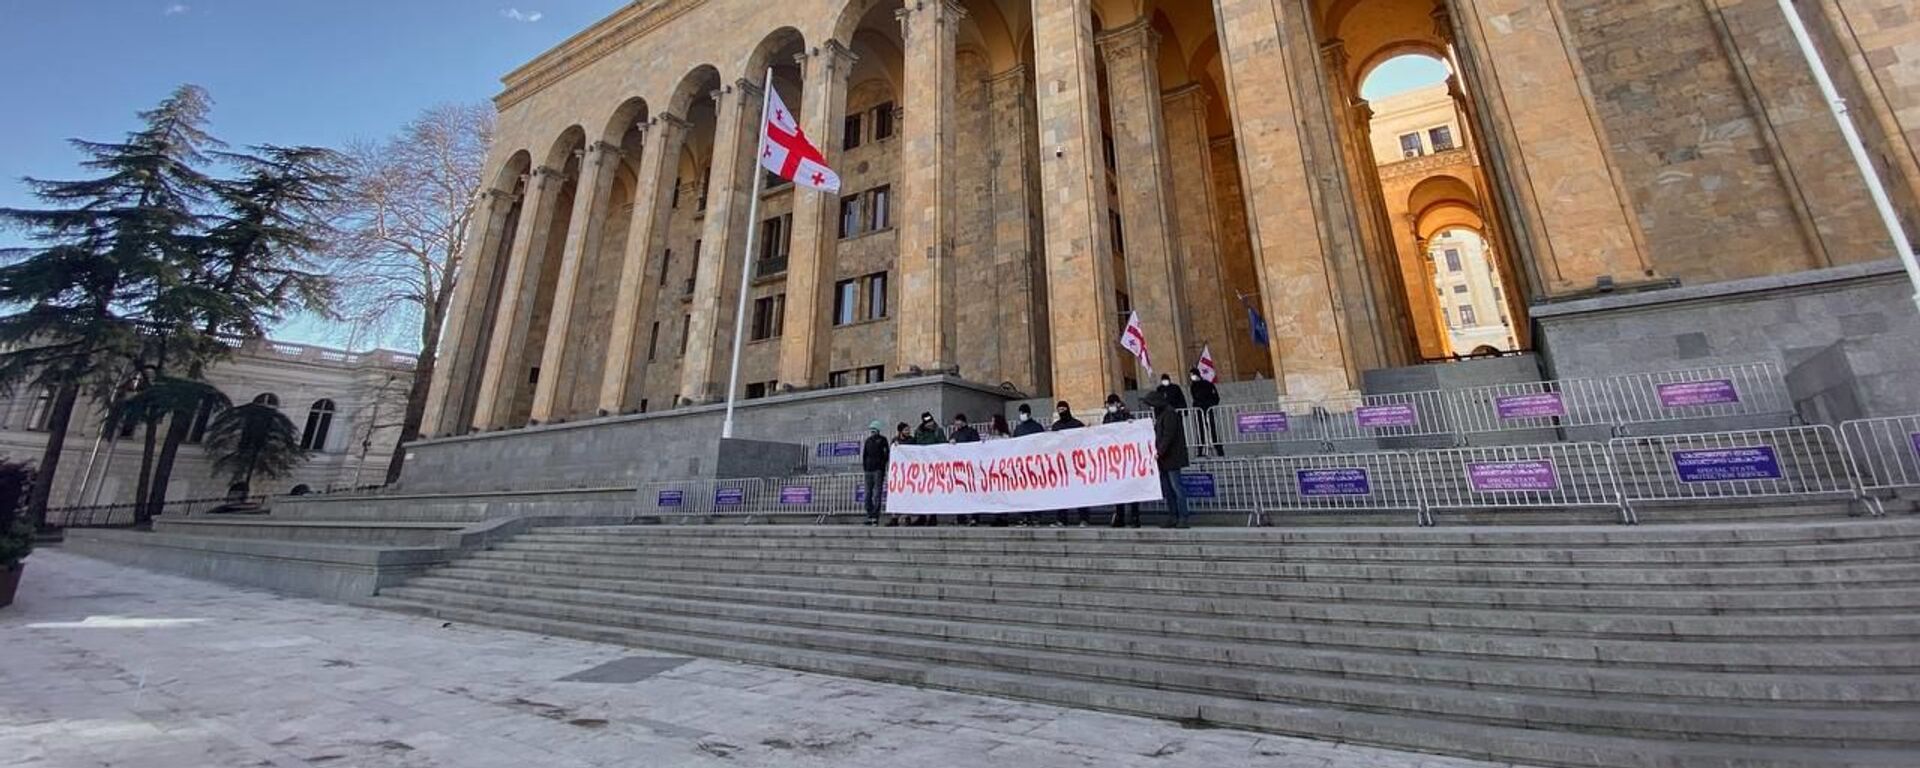 Акция протеста гражданских активистов у здания парламента Грузии - Sputnik Грузия, 1920, 27.04.2021